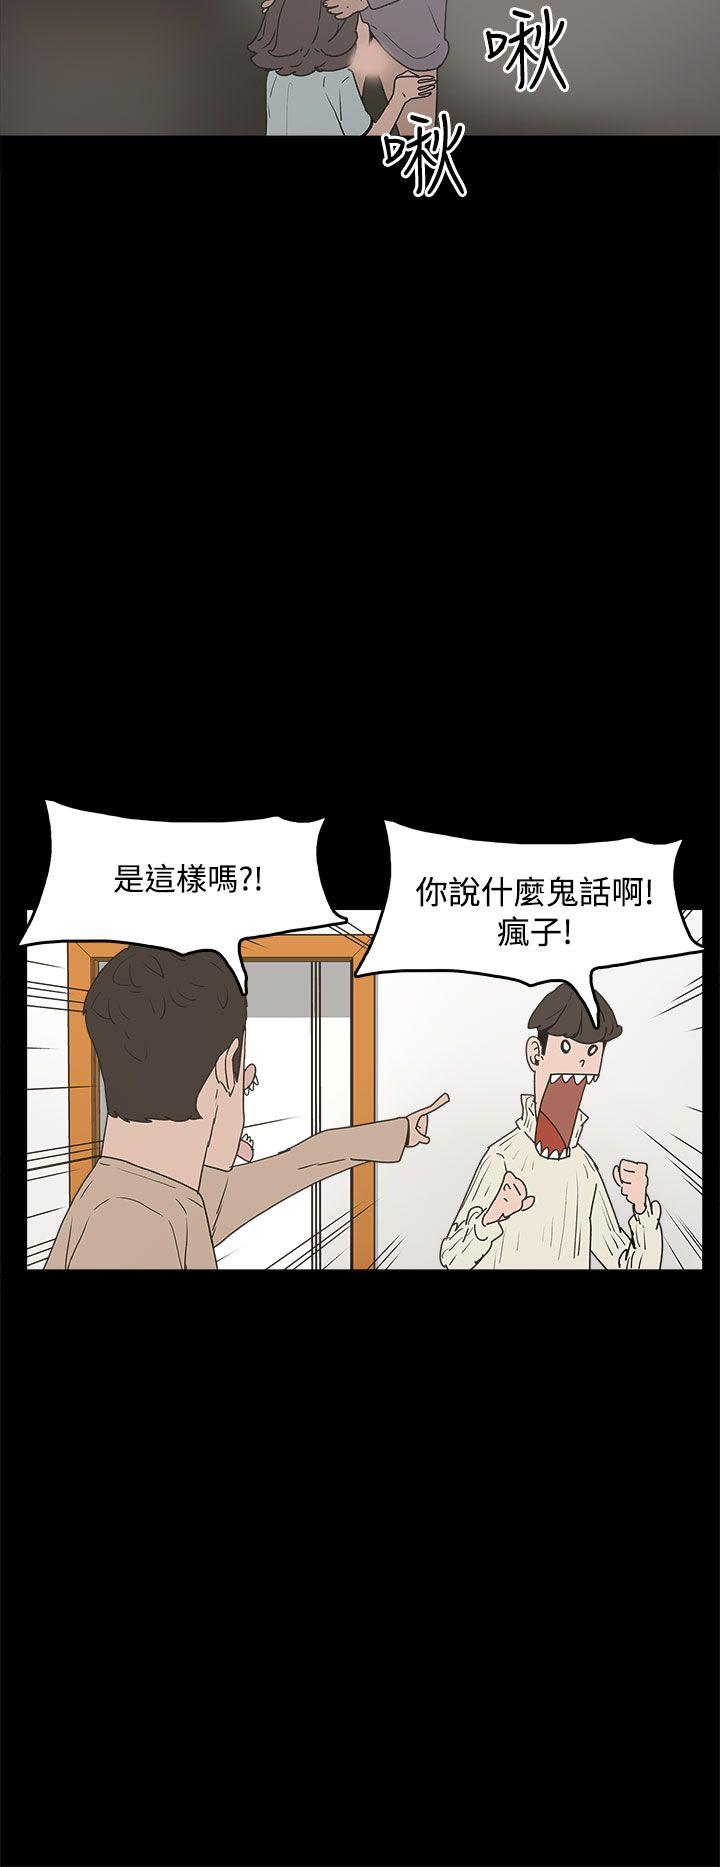 崔强性气与朴银慧  第31话 漫画图片4.jpg